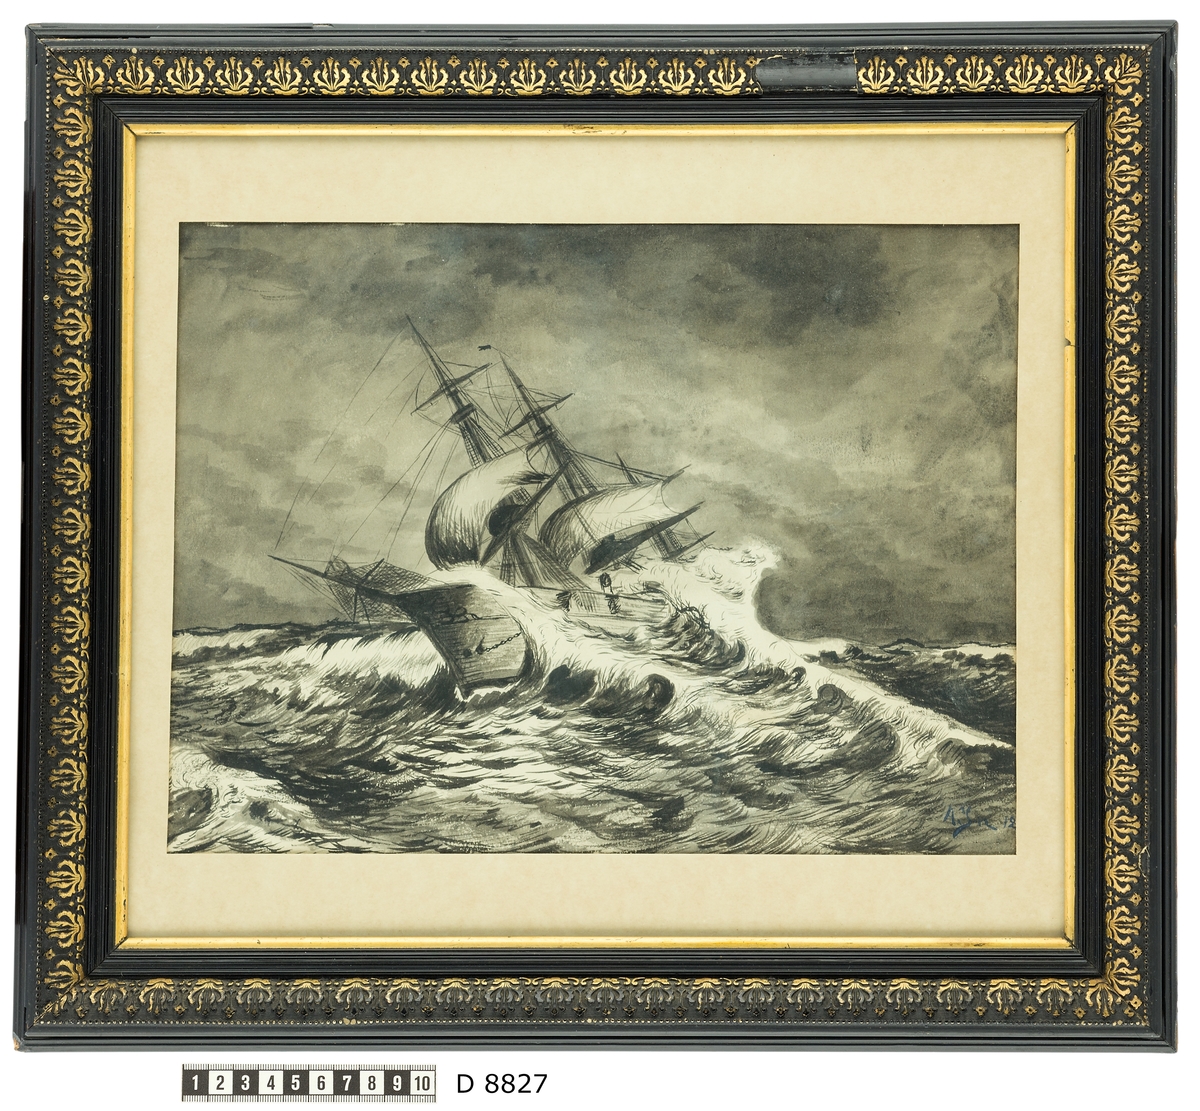 Teckningen visar korvetten Freja under segling i storm på Engelska kanalen förande bottenrevat för- och stormärssegel. Korvetten överfölls natten mellan den 14 och 15 mars 1905 av en orkanby.